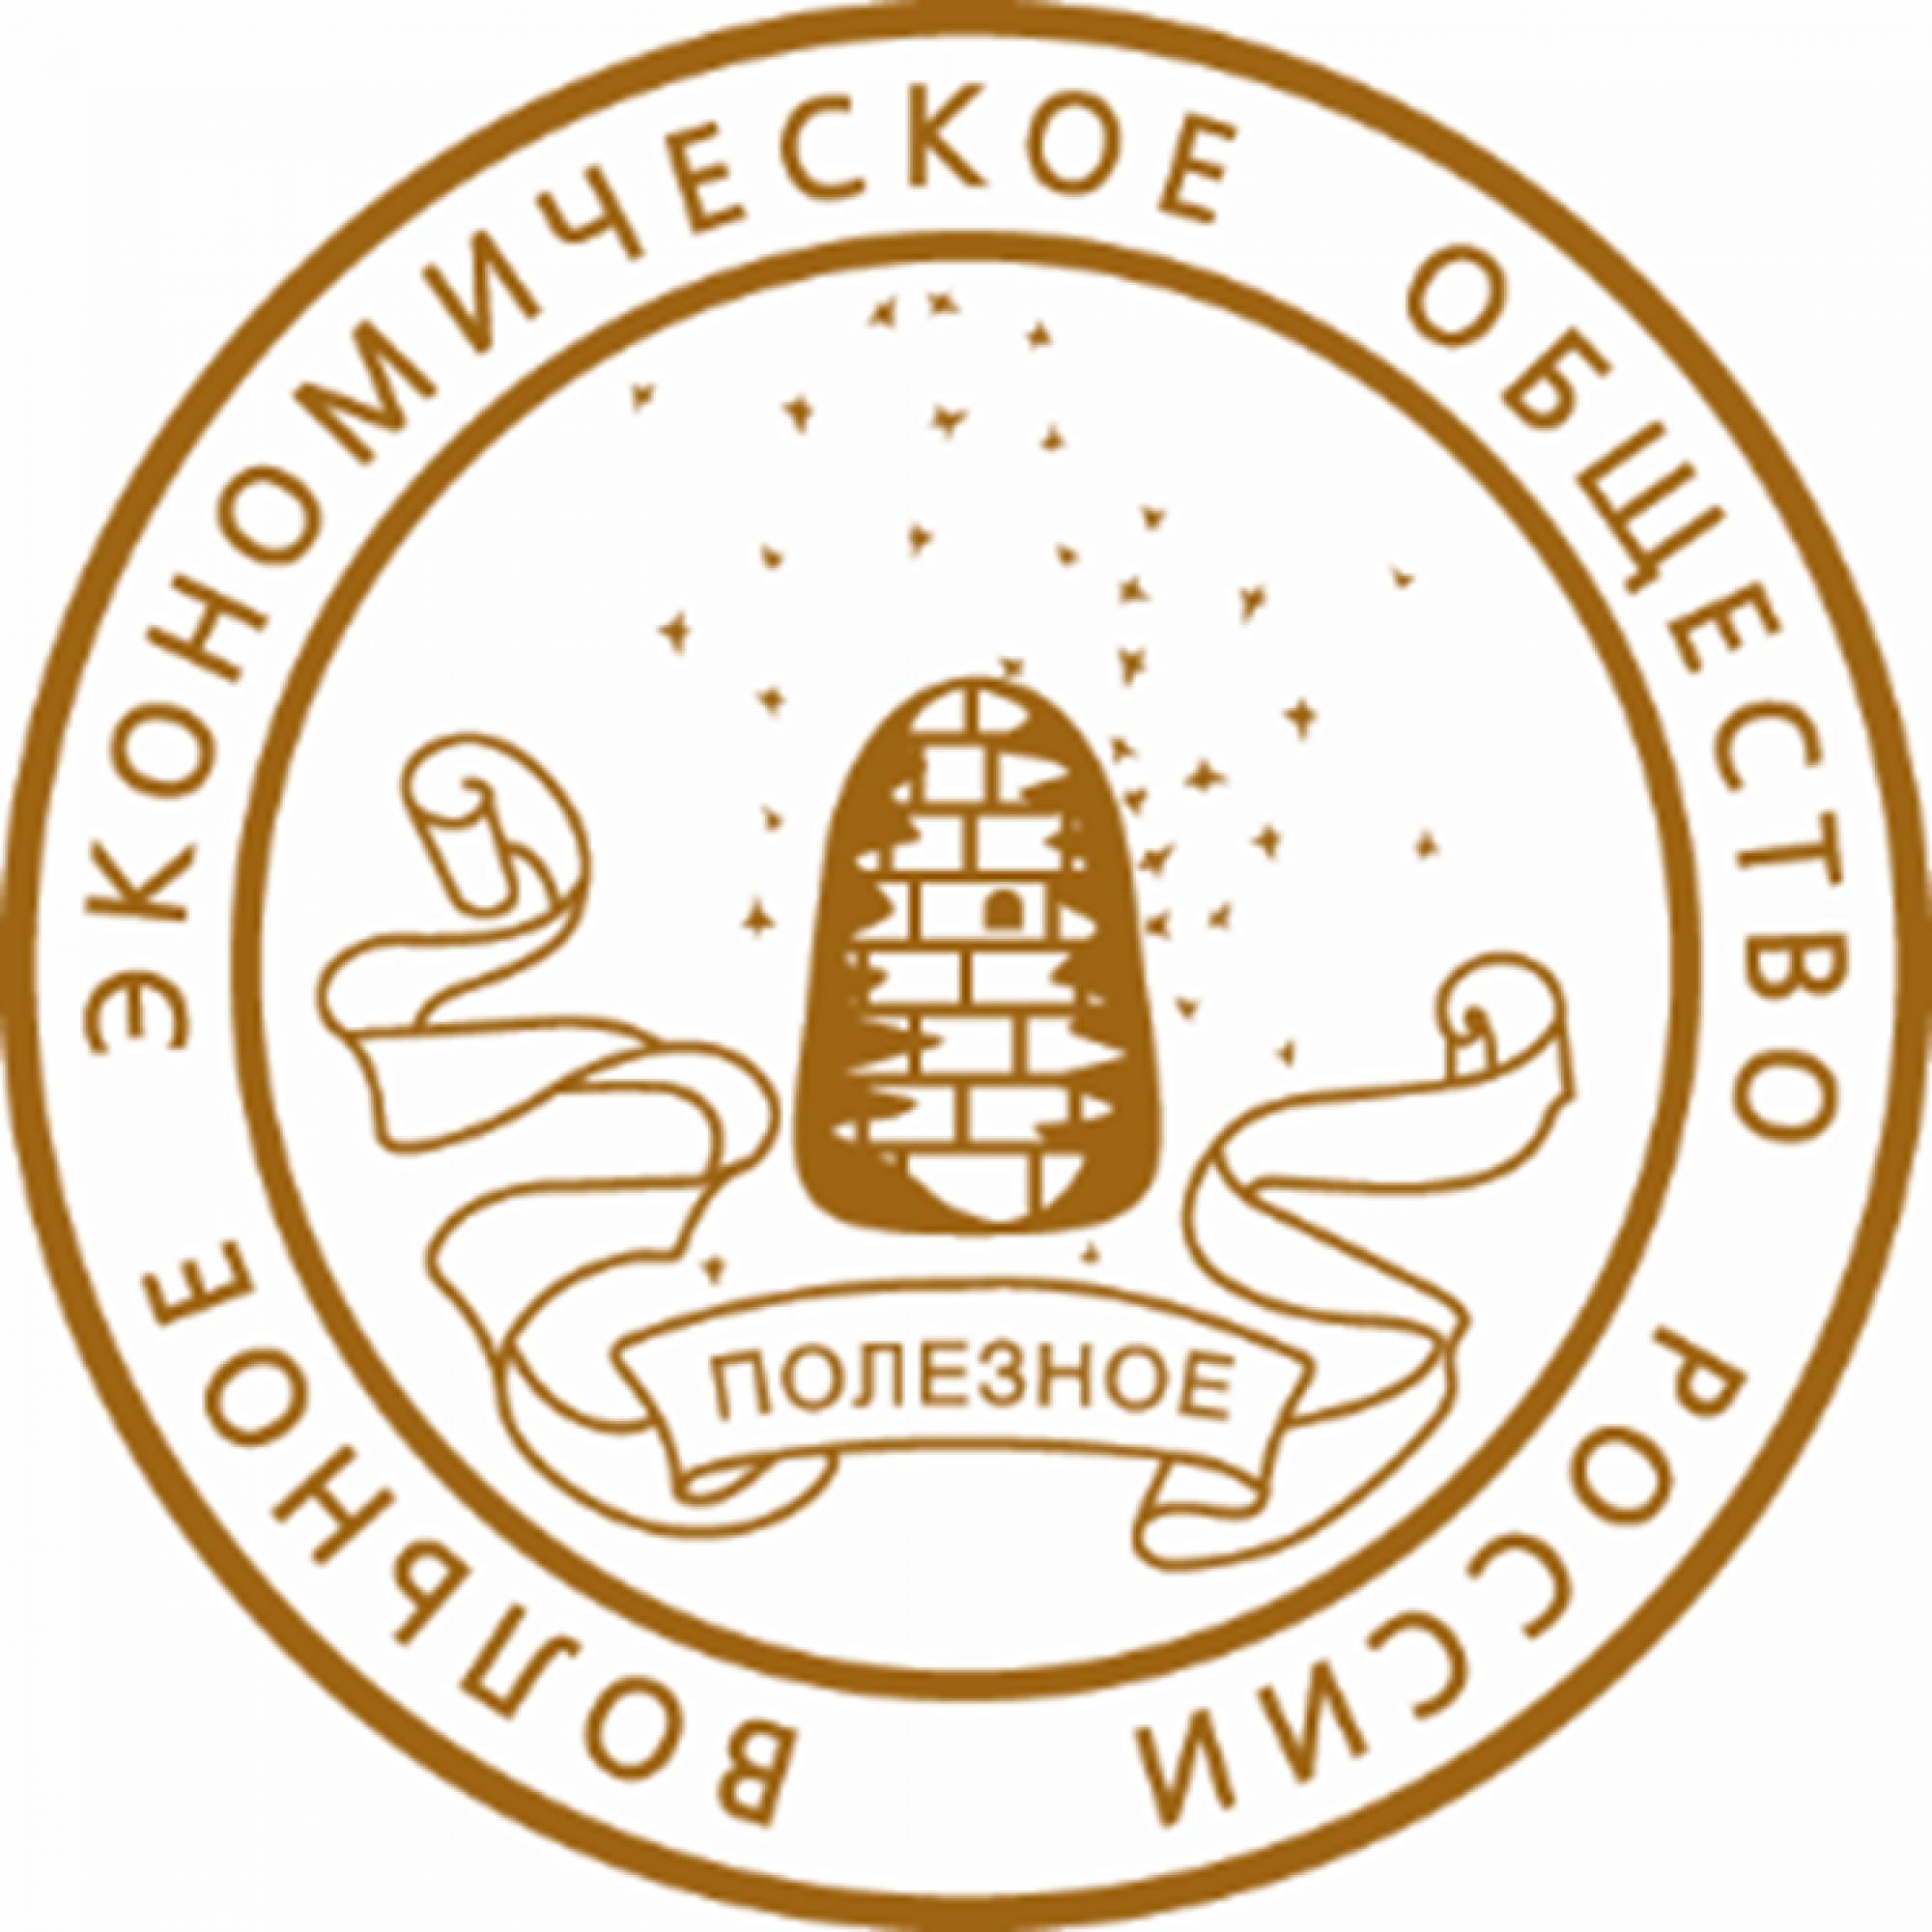 4 вольное экономическое общество. Вольное экономическое общество (ВЭО). Эмблема вольного экономического общества. Логотип ВЭО России. Волна экономическое общемтво.